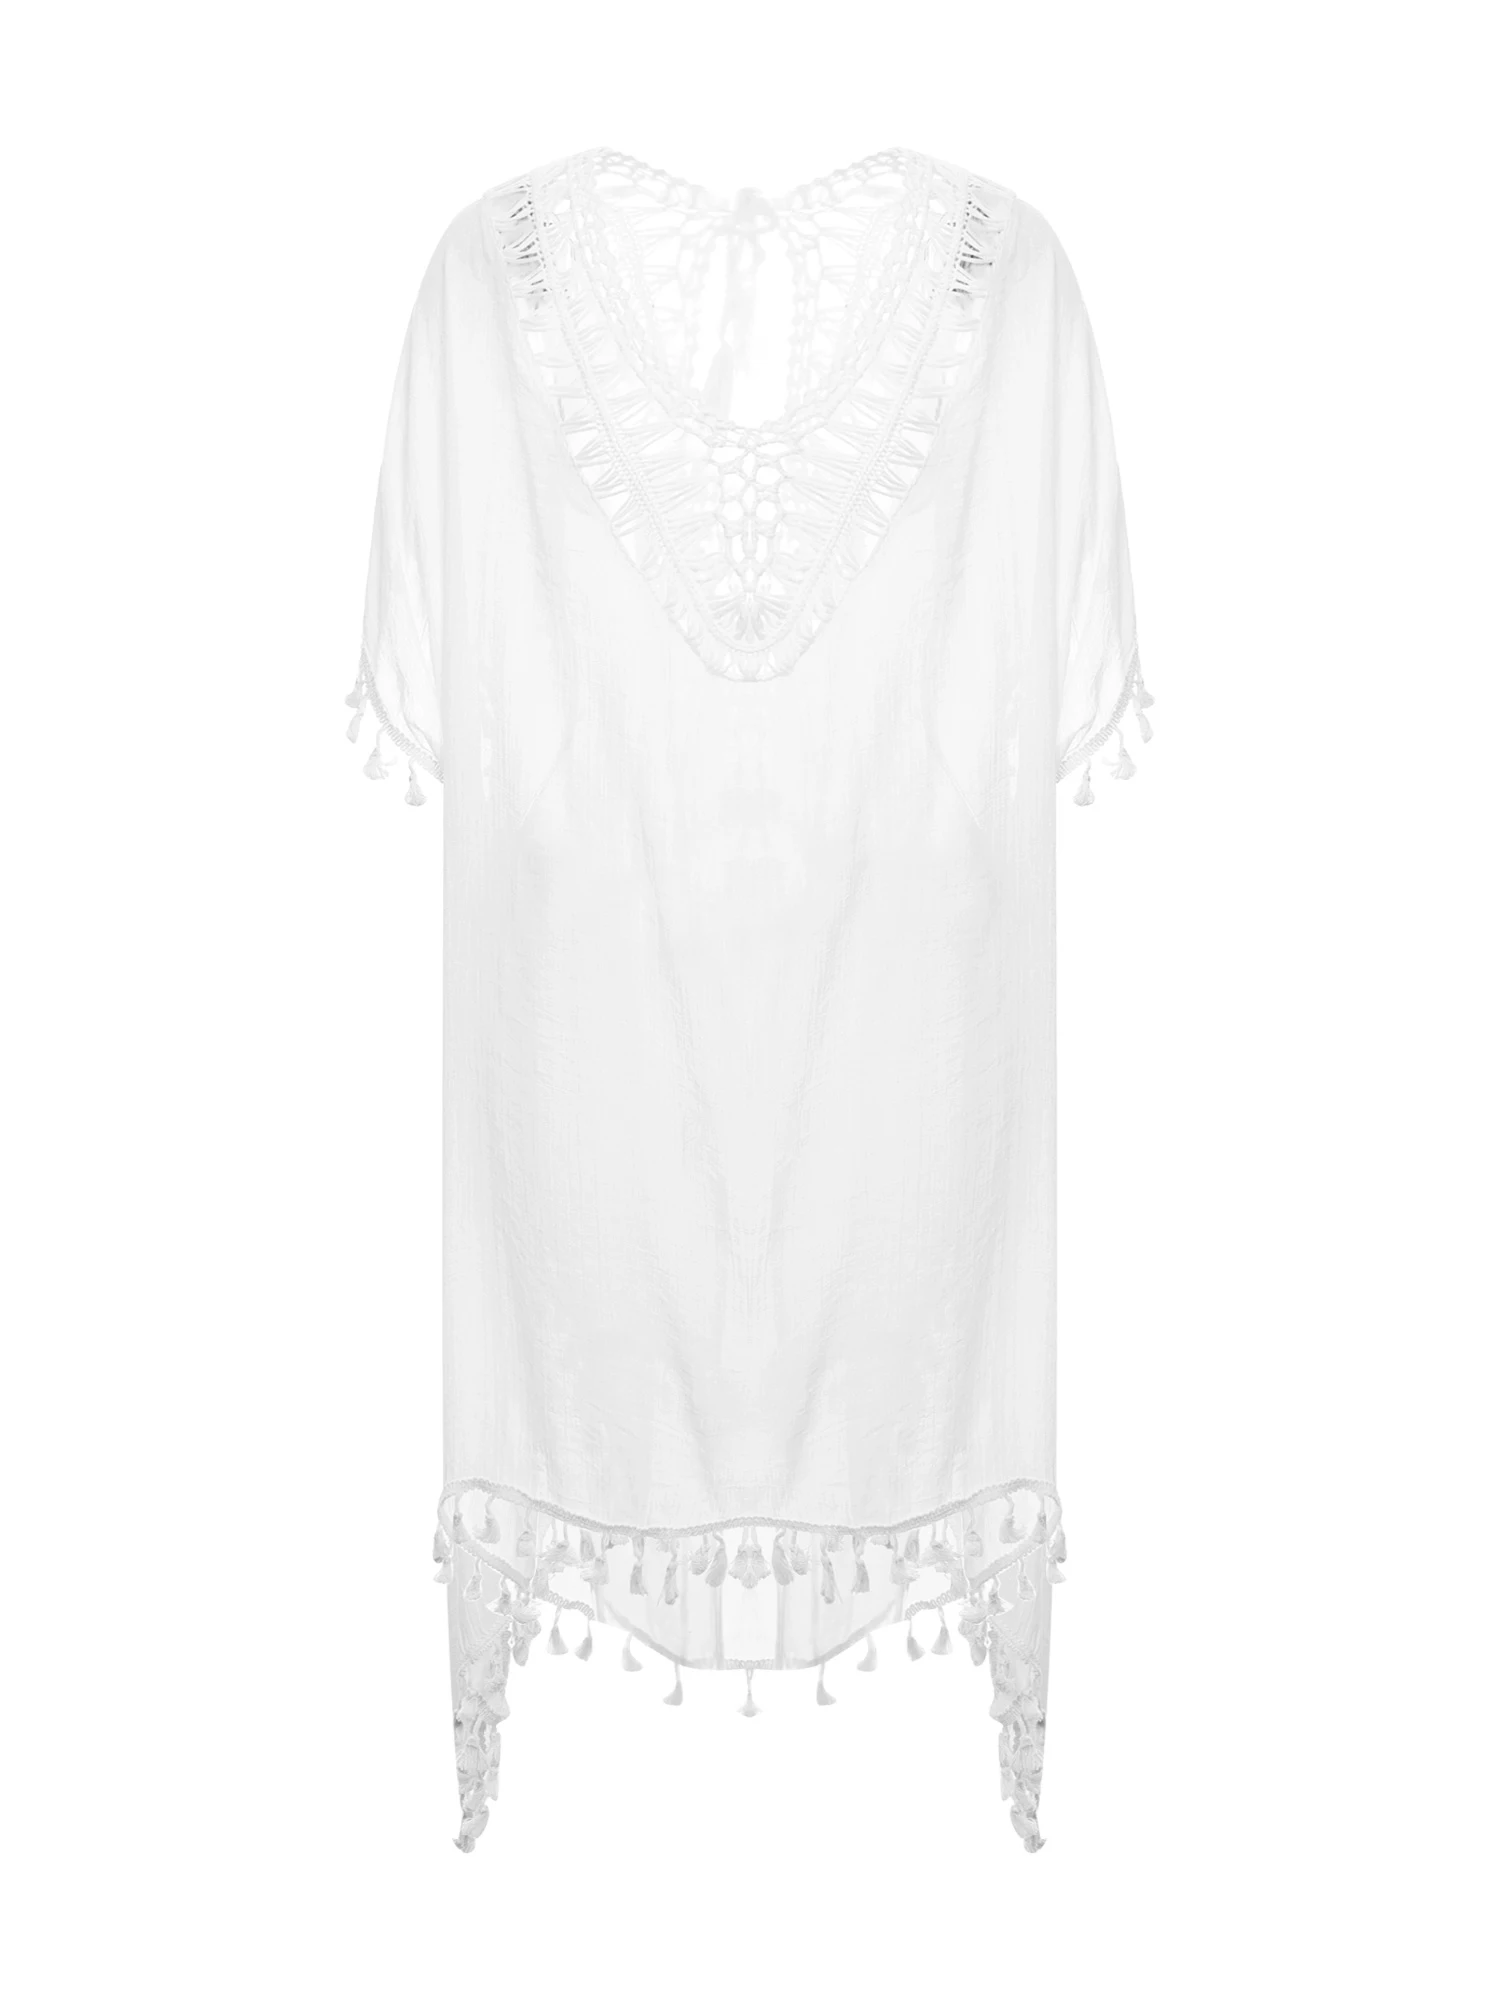 

Женское прозрачное кружевное пляжное платье-накидка с бахромой для купальников, бикини, купальный костюм, пляжная одежда